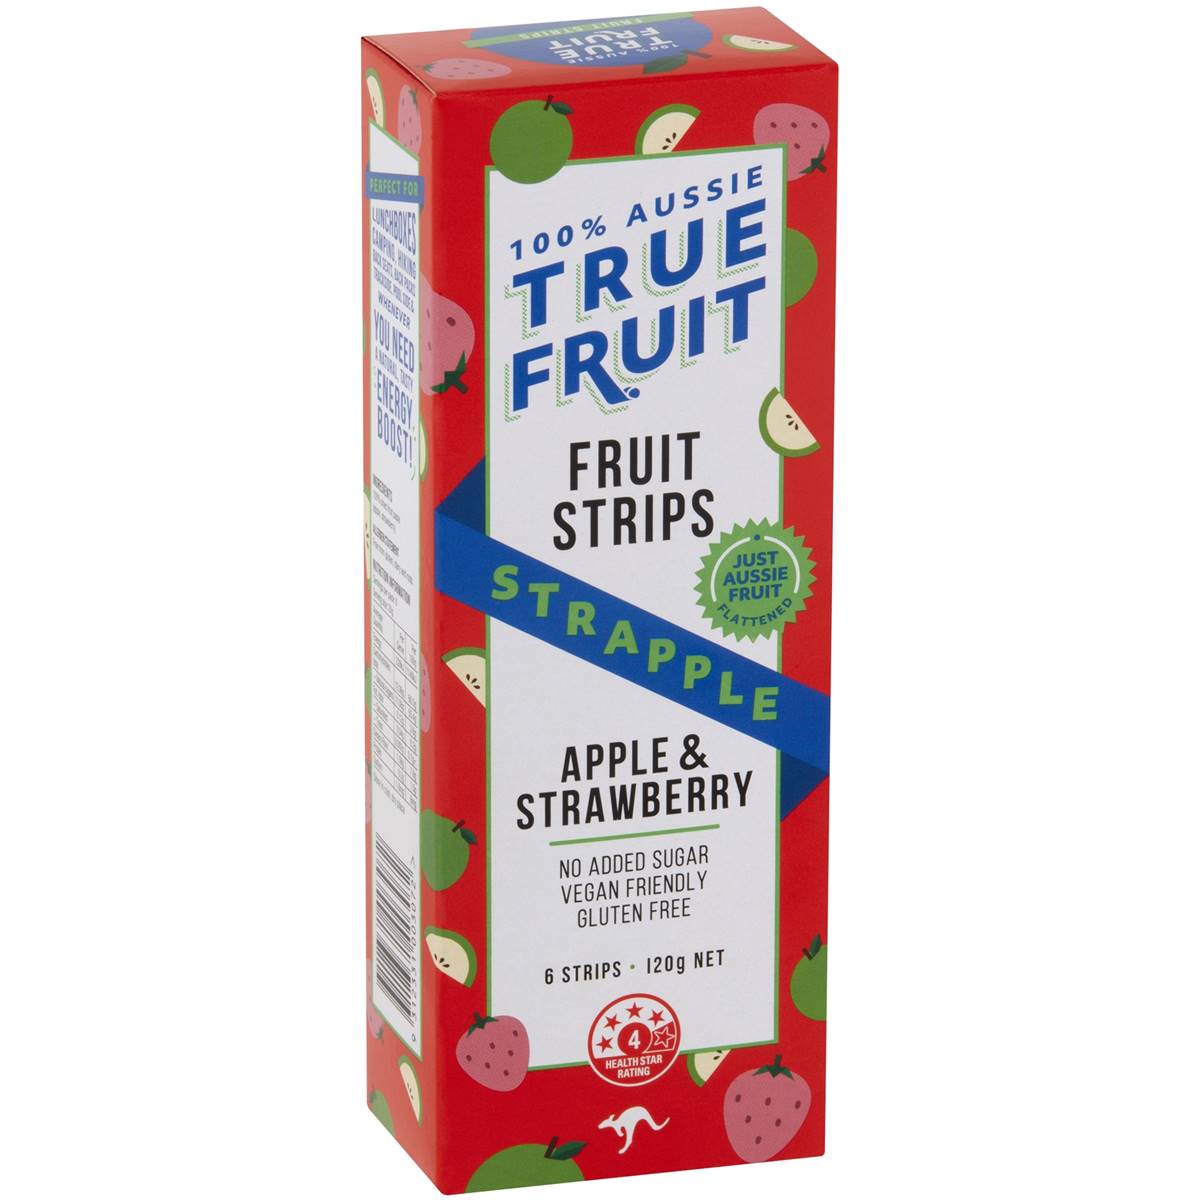 True Fruit澳洲代购直邮健康无糖100%纯果汁酸甜果丹皮水果条120g - 图3